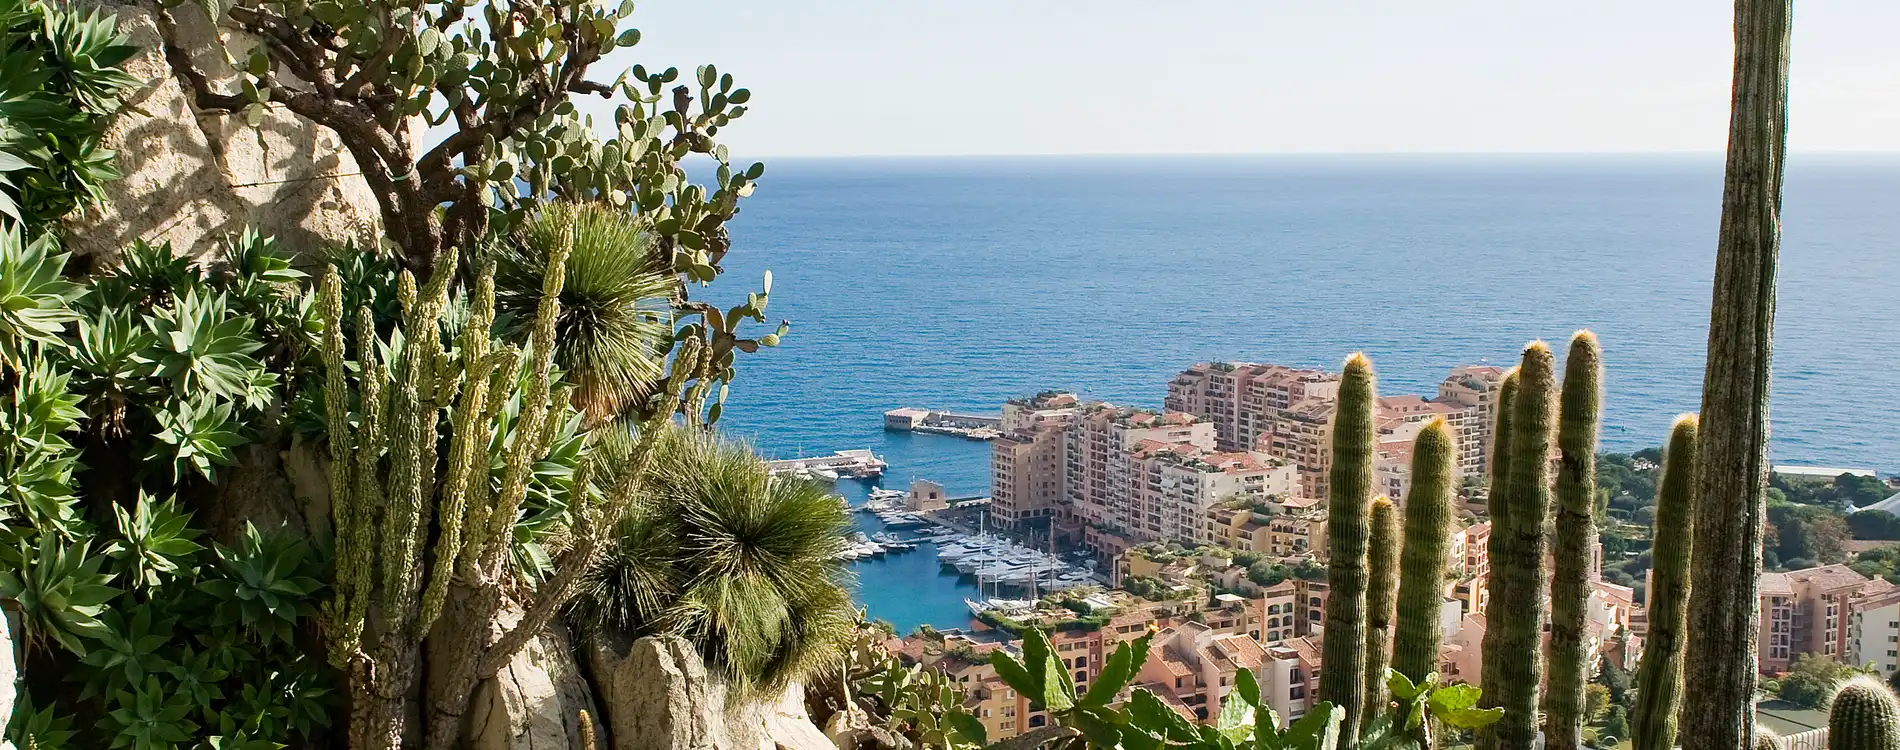 Les meilleurs endroits et activités de Monaco